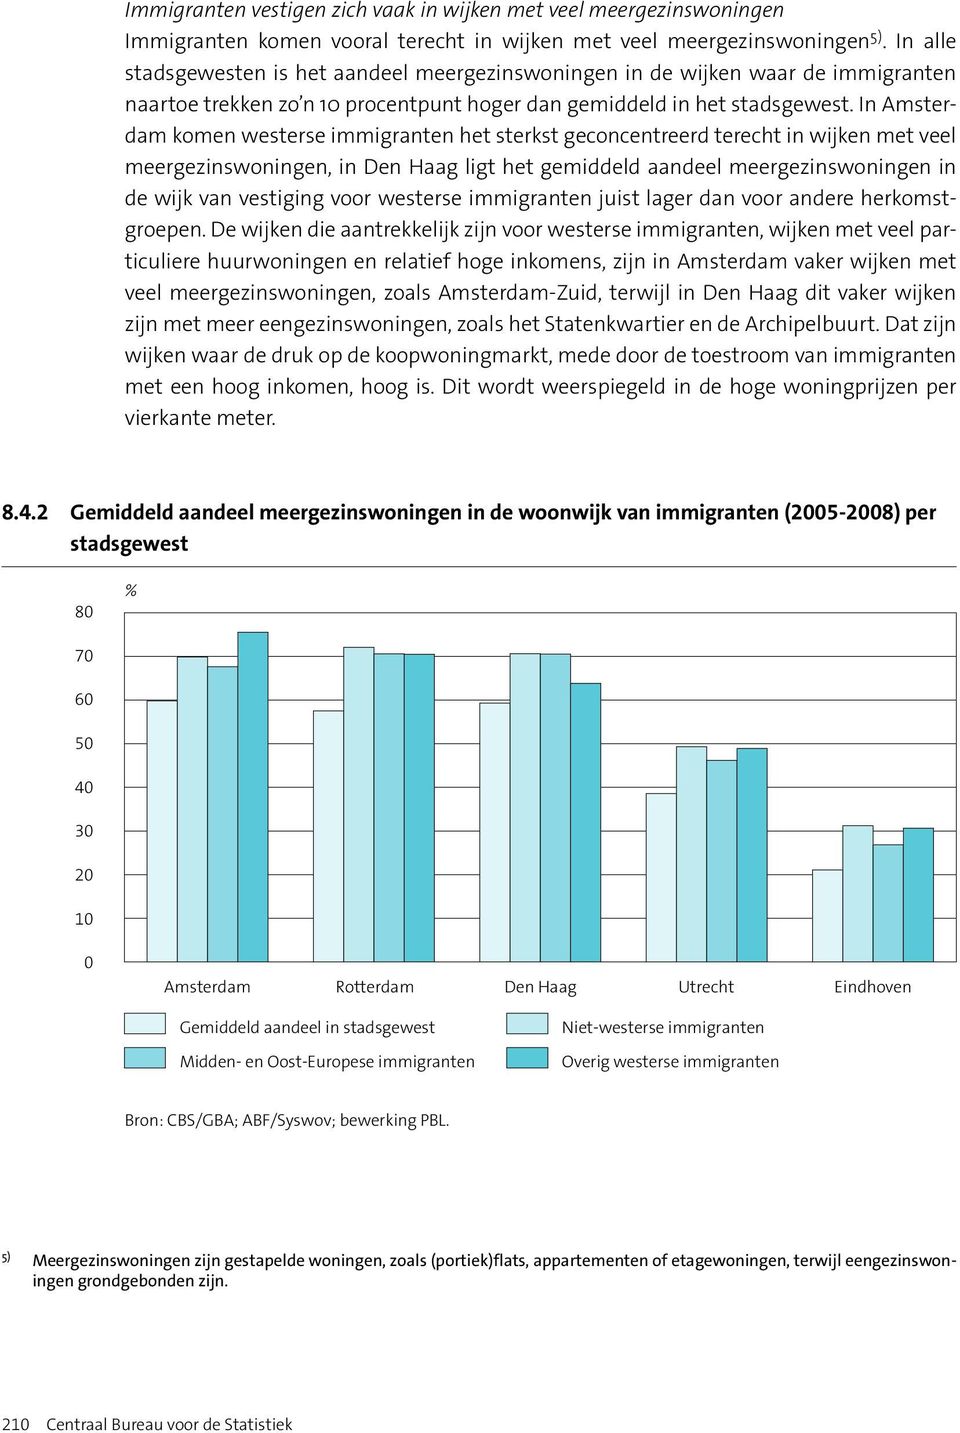 In Amsterdam komen westerse immigranten het sterkst geconcentreerd terecht in wijken met veel meergezinswoningen, in Den Haag ligt het gemiddeld aandeel meergezinswoningen in de wijk van vestiging